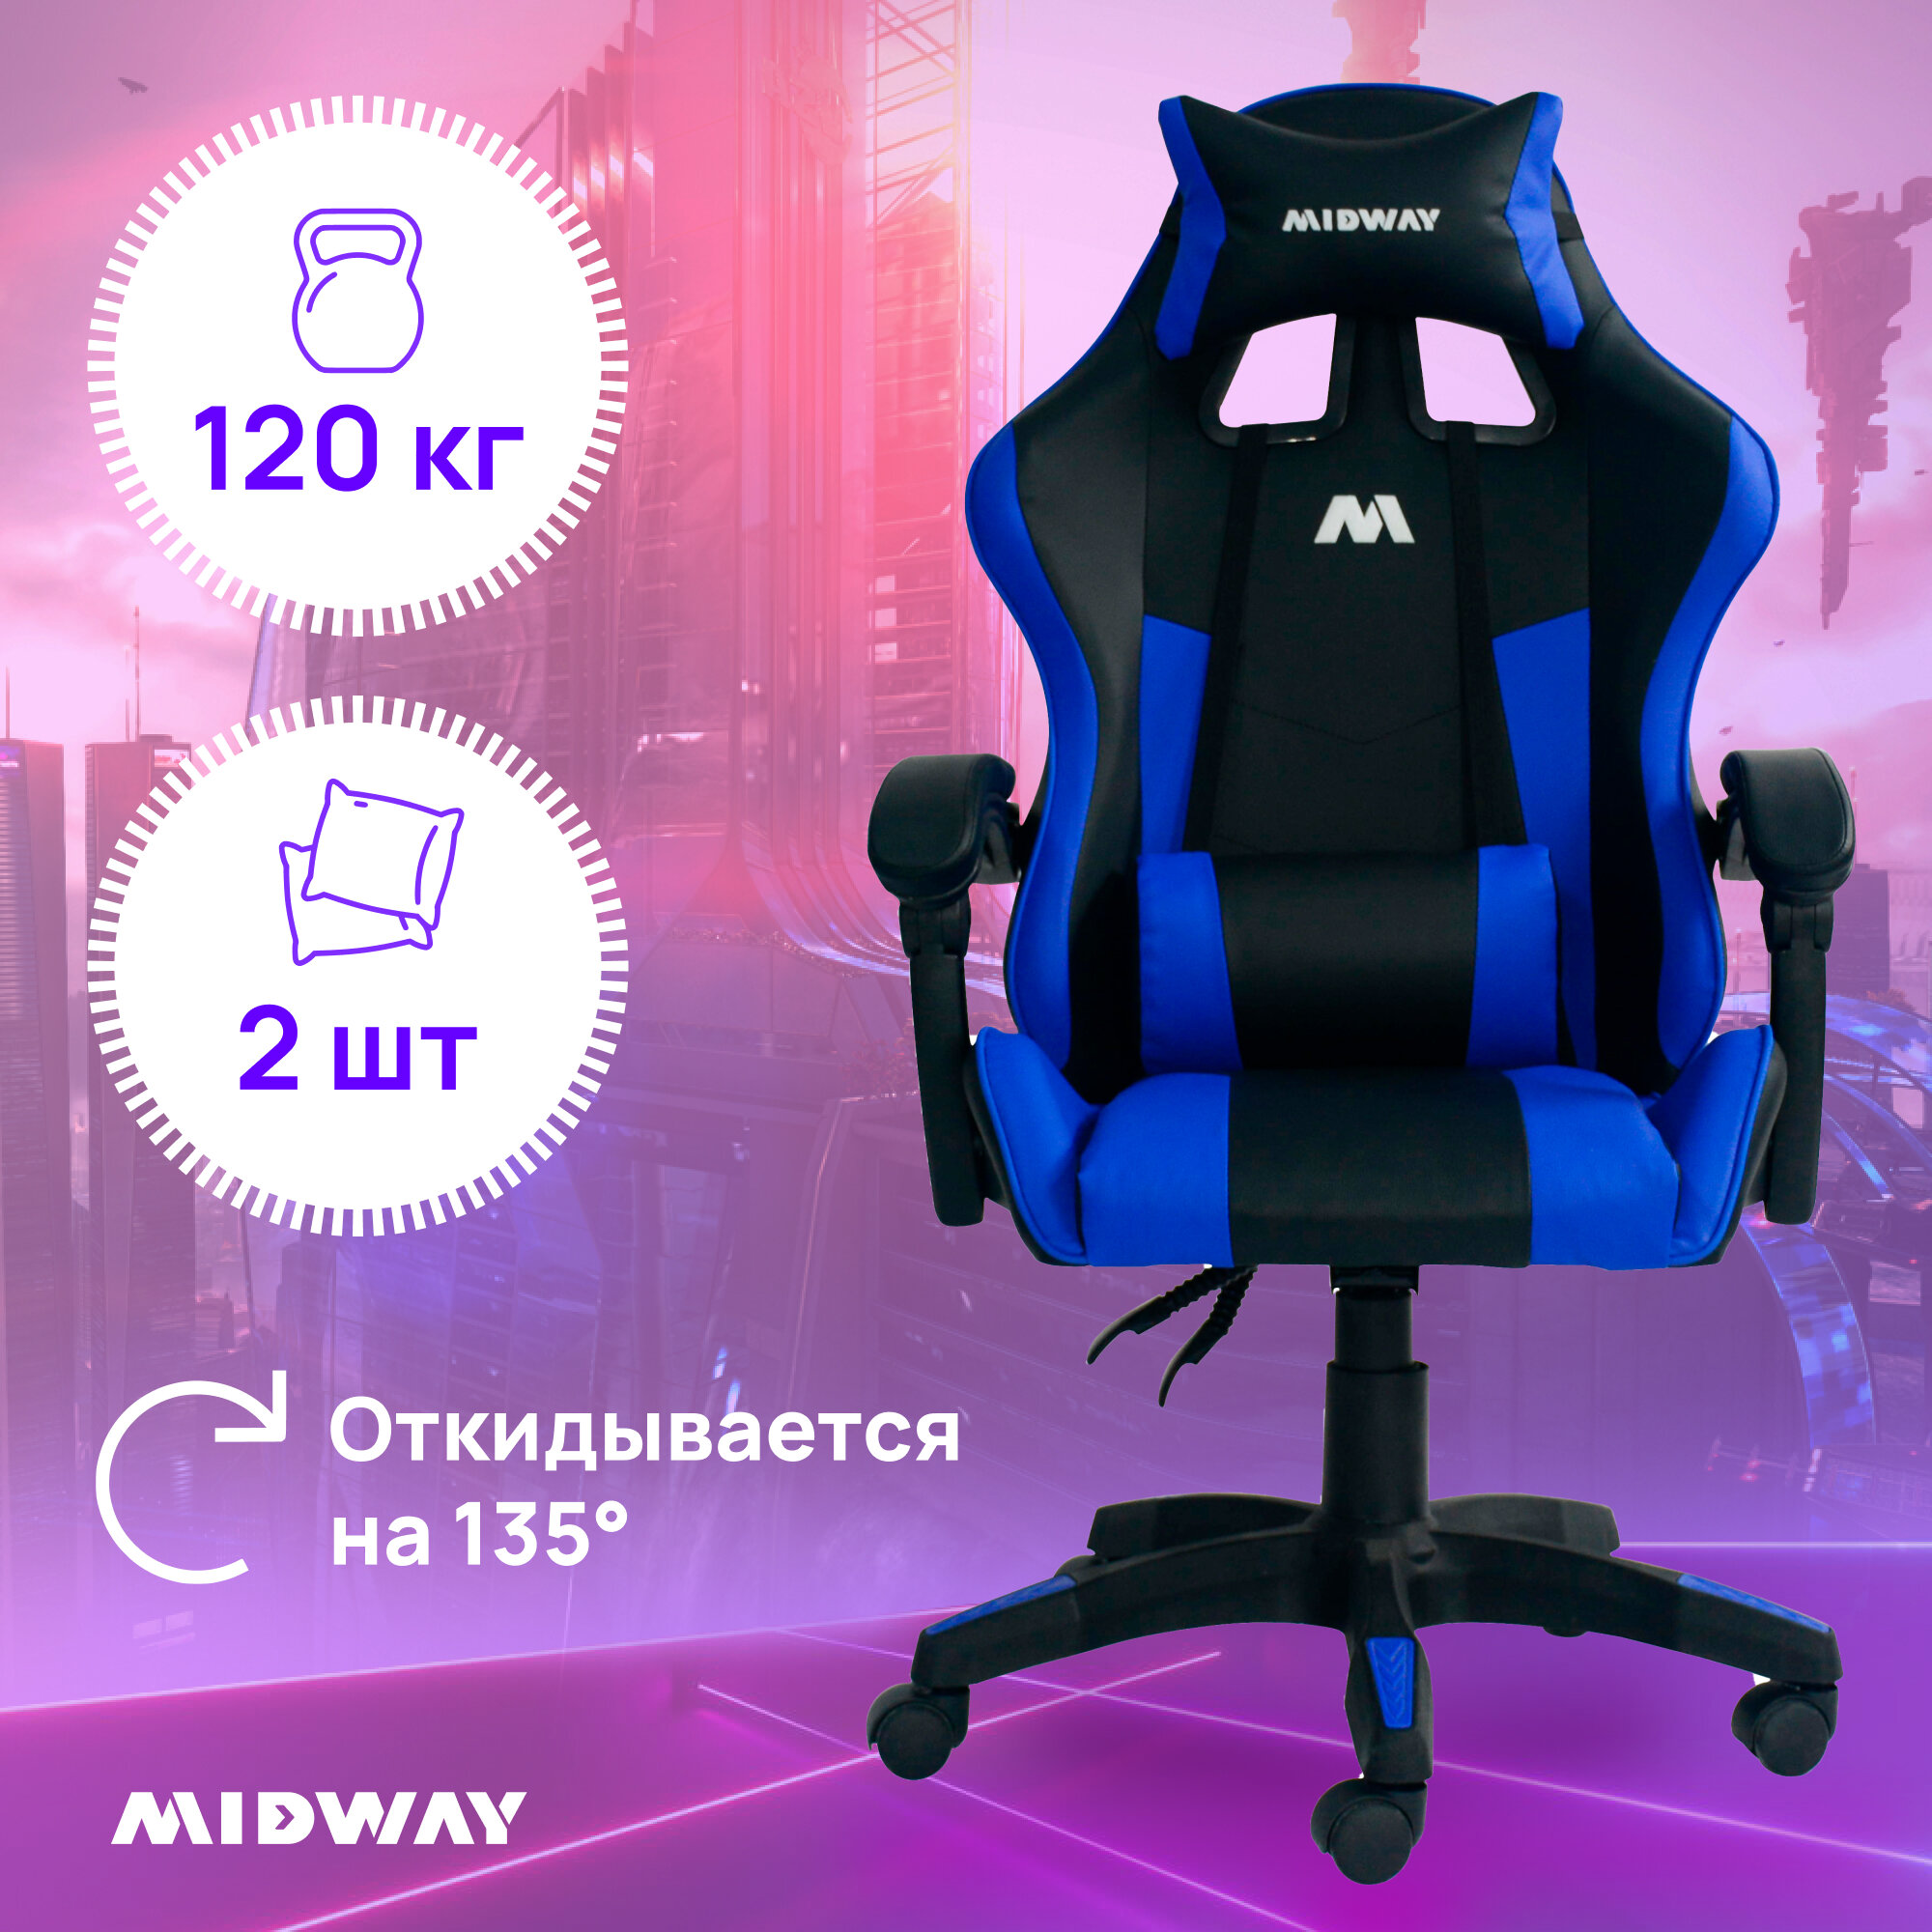 Кресло компьютерное Midway Axe - синее, эргономичное кресло с обивкой из эко-кожи